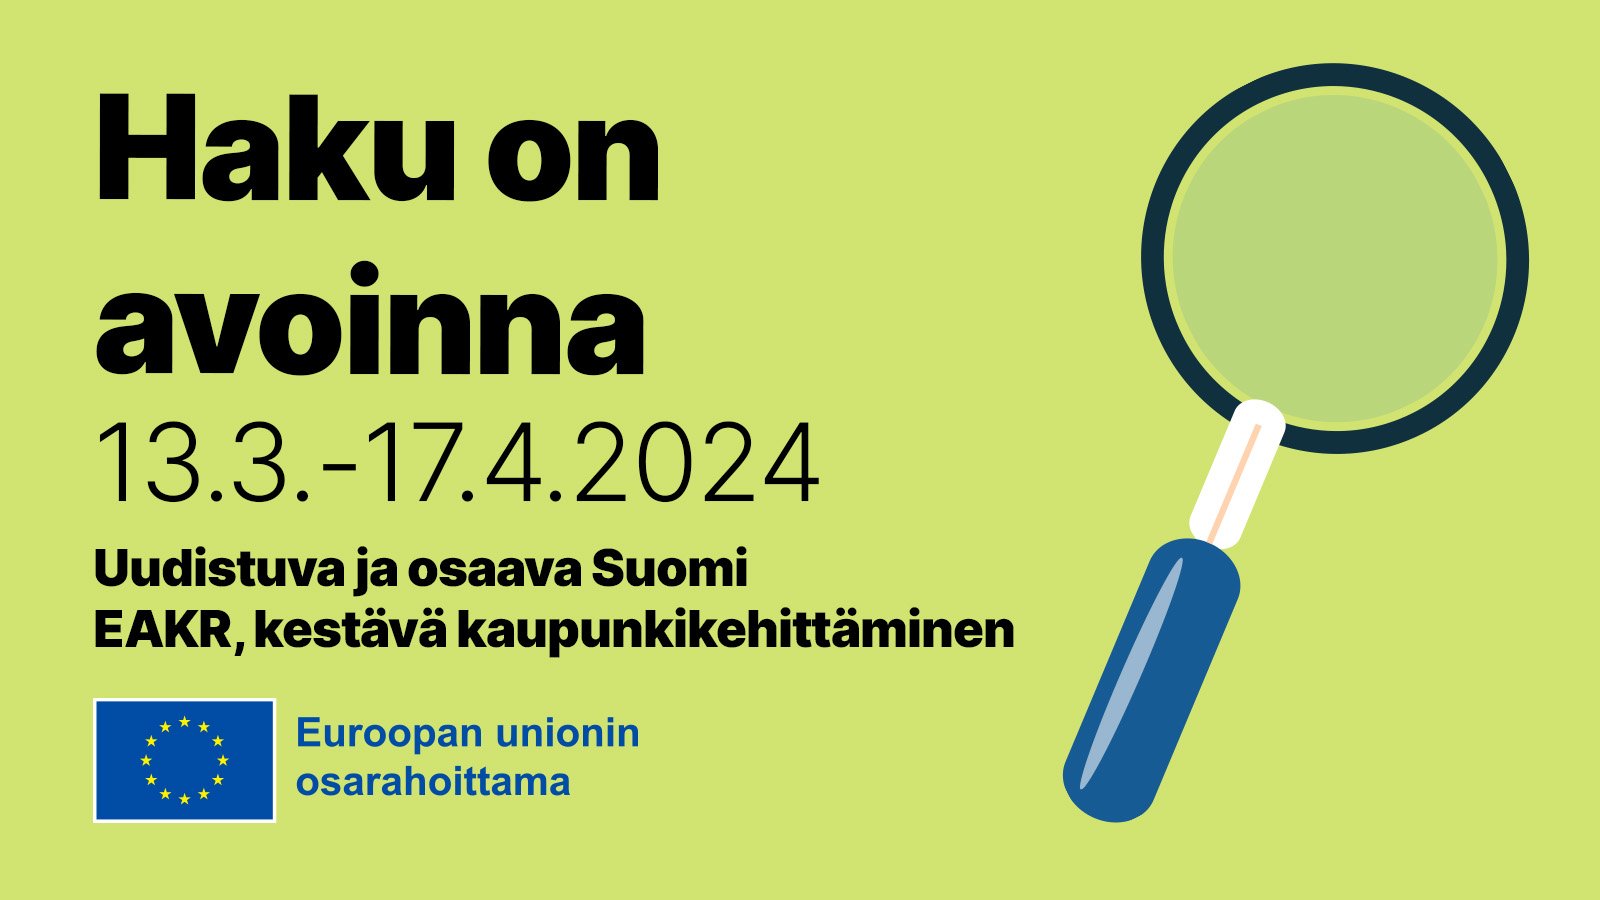 Vihreällä pohjalla suurennuslasi. Vasemmalla tekstit: Haku on avoinna 13.3.-17.4.2024, Uudistuva ja osaava Suomi, EAKR, kestävä kaupunkikehittäminen. Alhaalla EU:n lipputunnus ja teksti "EU:n osarahoittama".